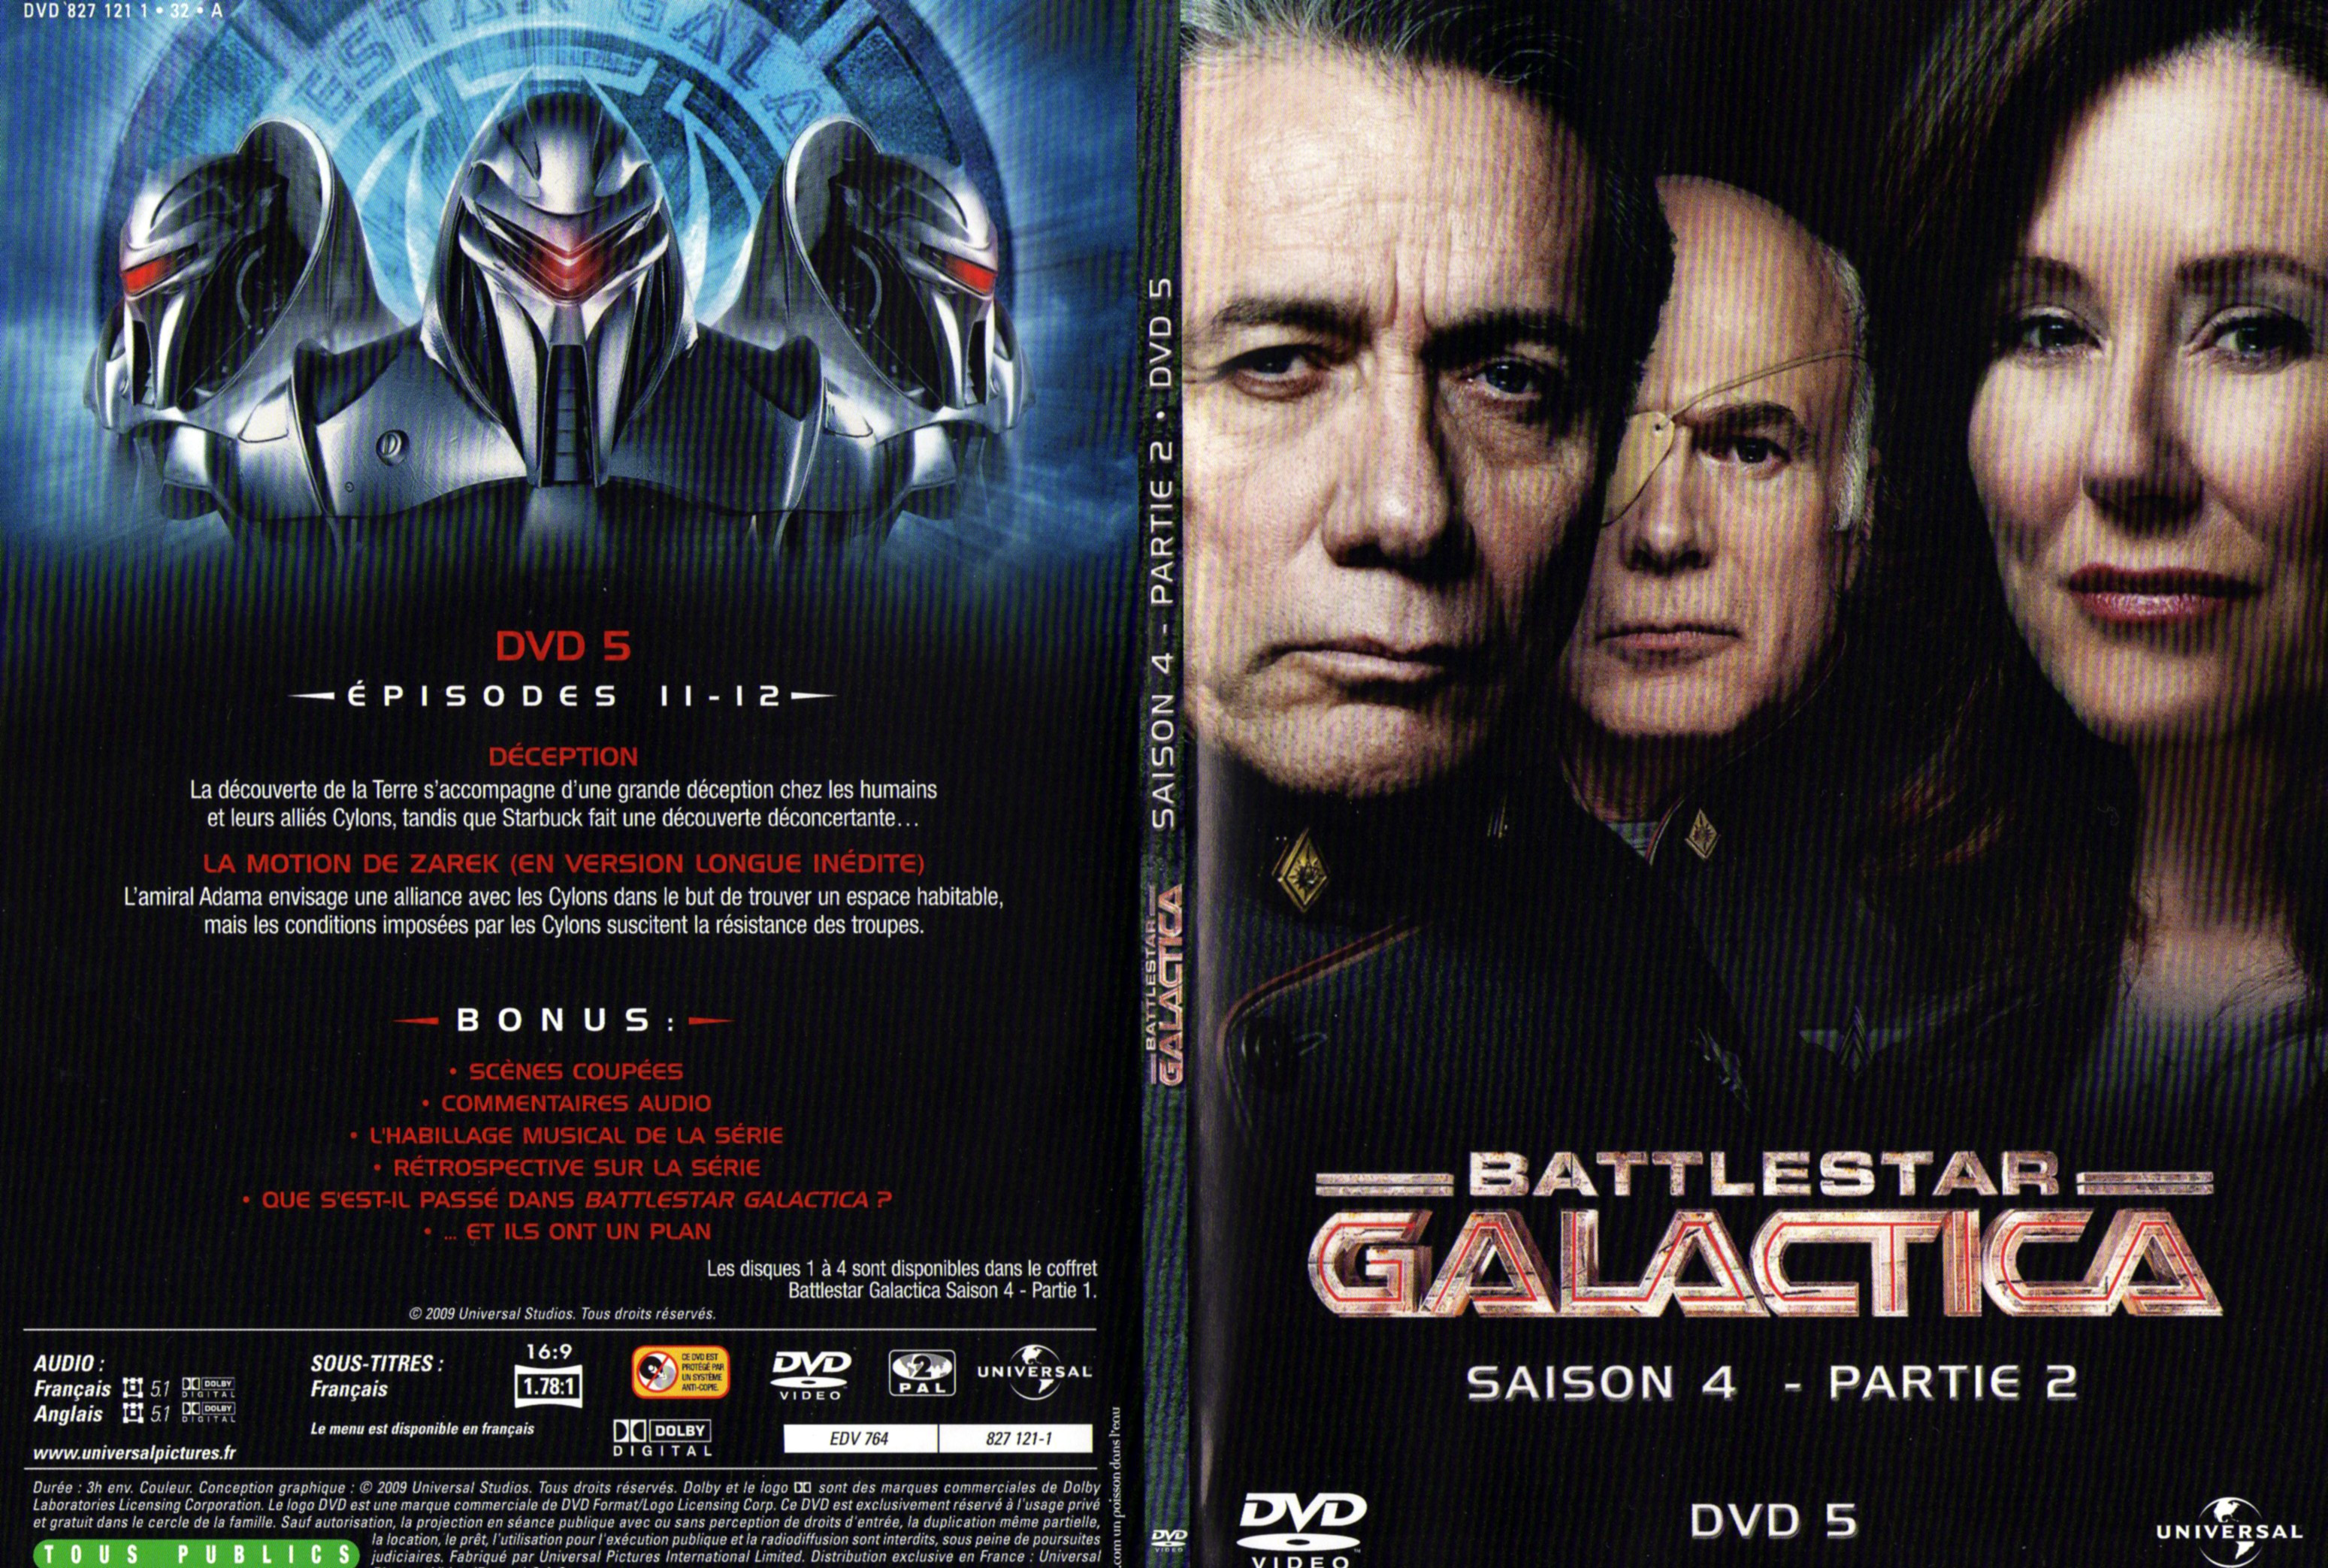 Jaquette DVD Battlestar Galactica Saison 4 partie 2 DVD 5